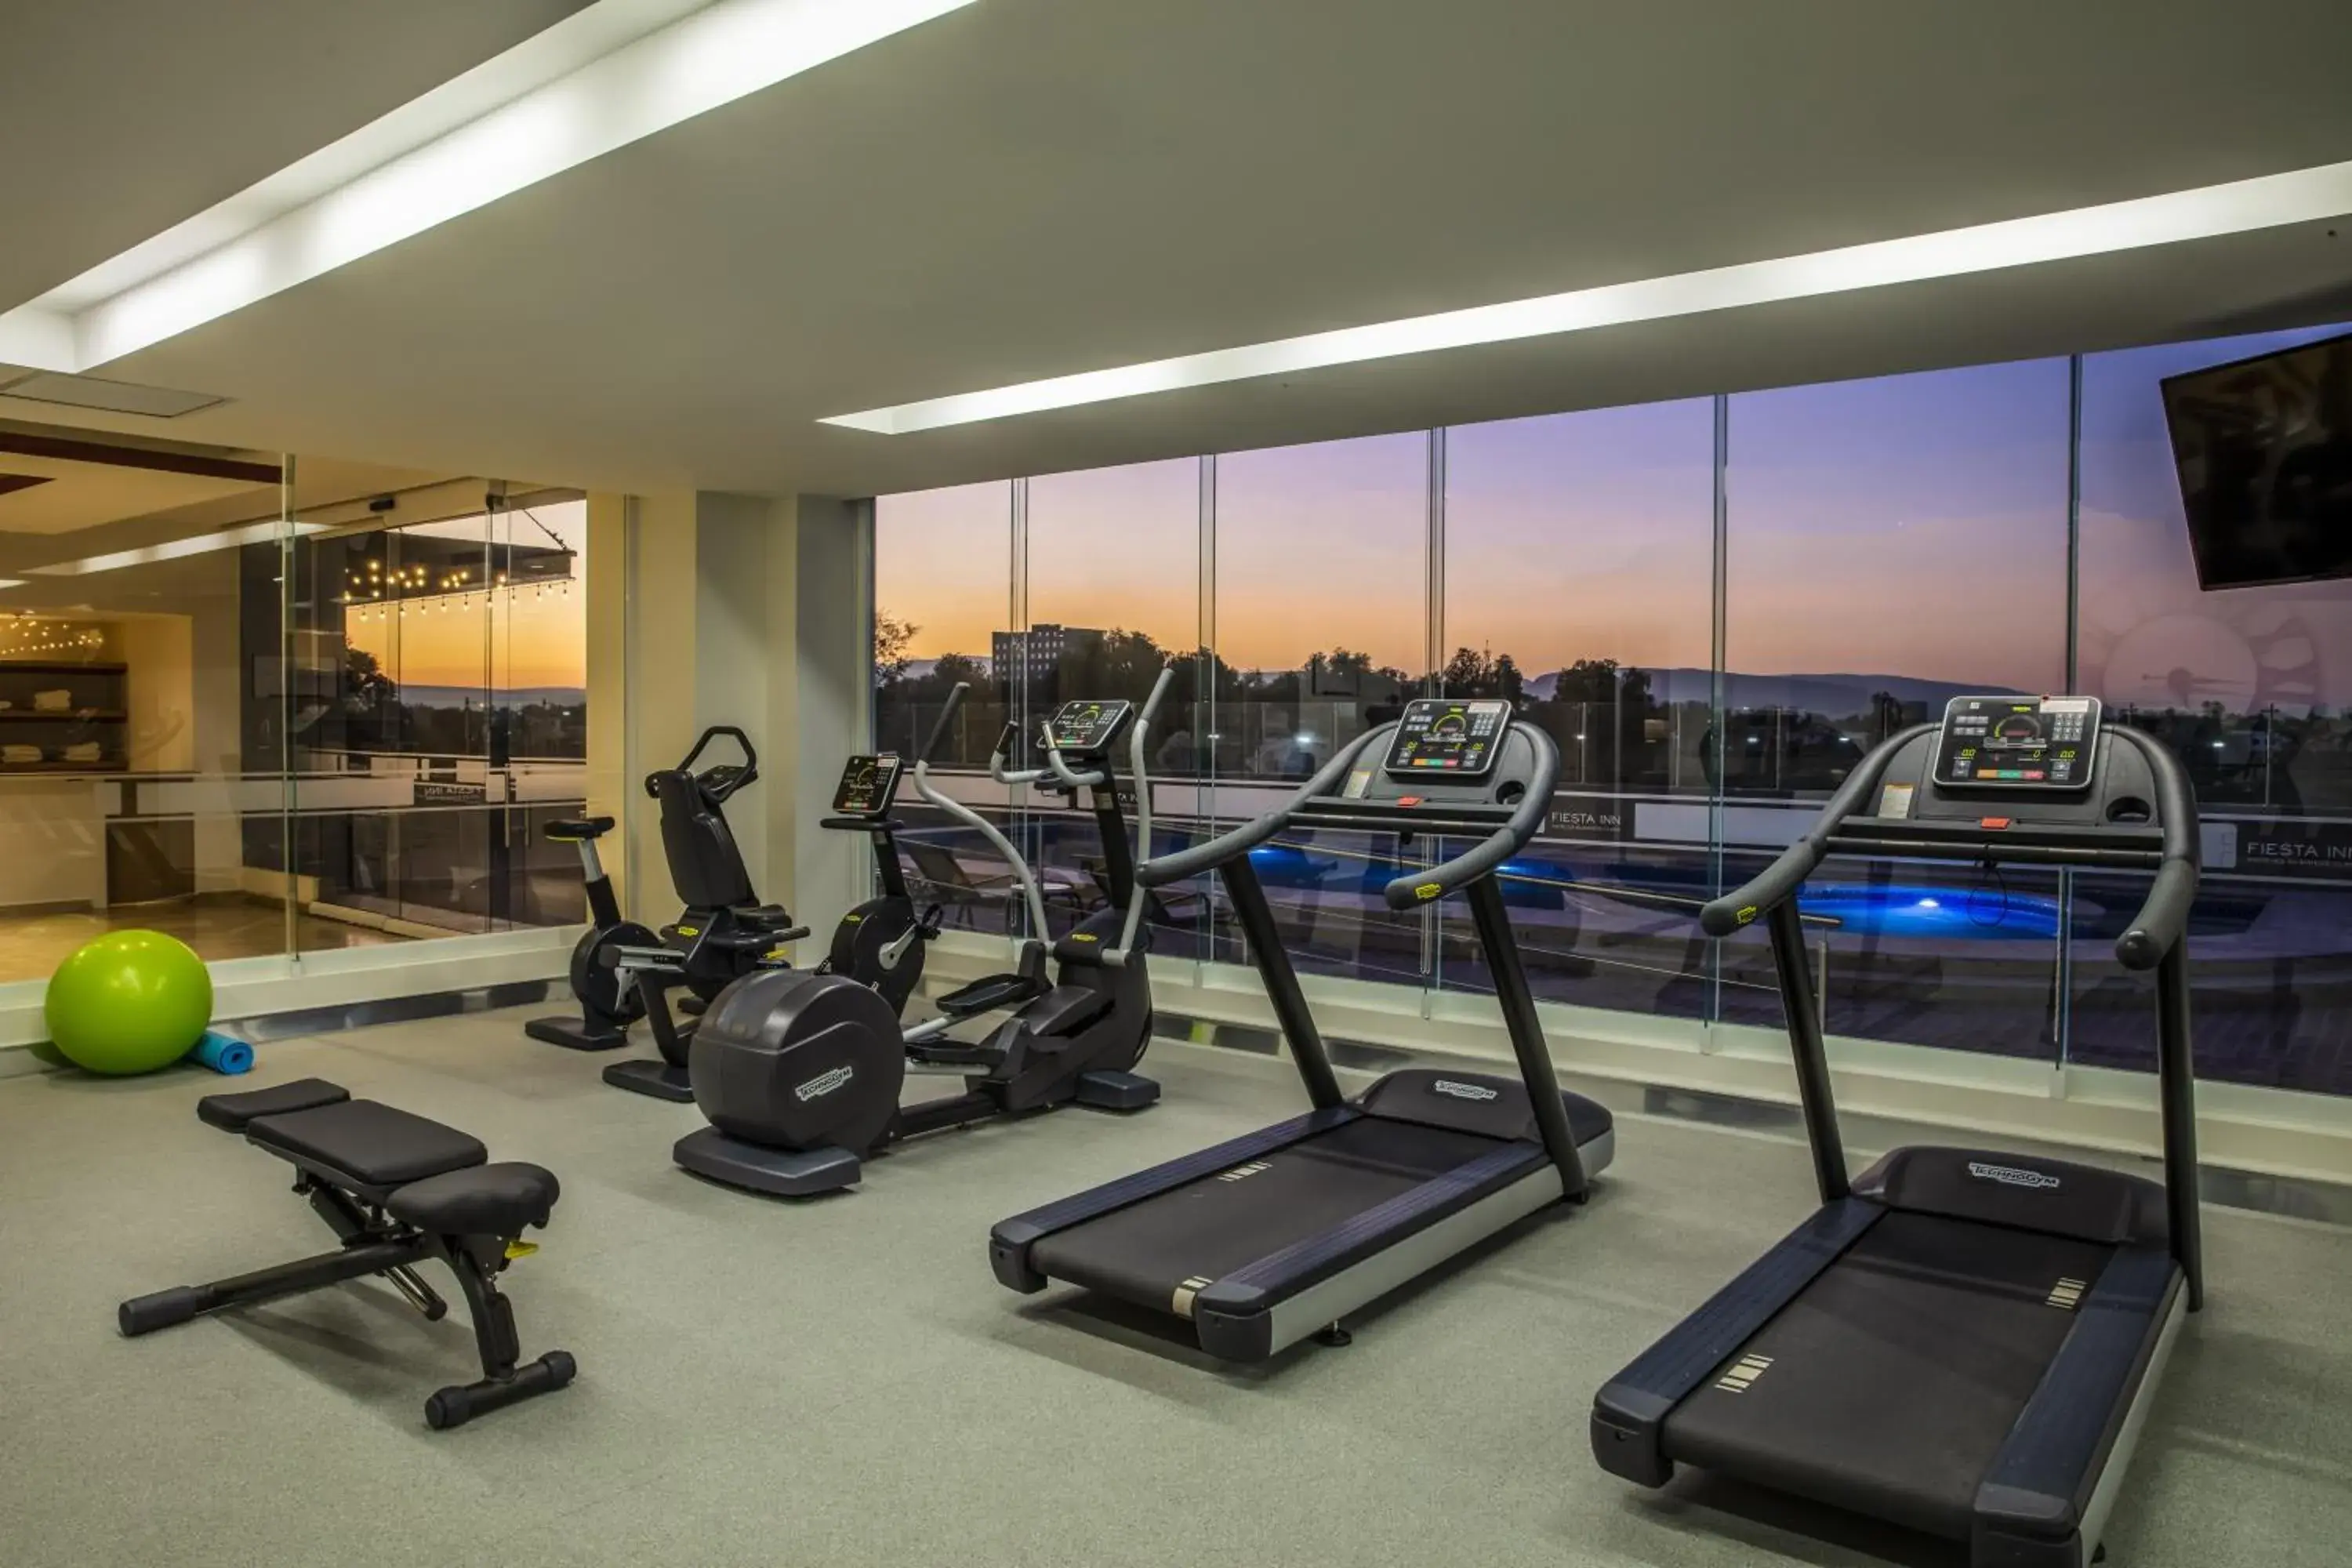 Fitness centre/facilities, Fitness Center/Facilities in Fiesta Inn Celaya Galerias